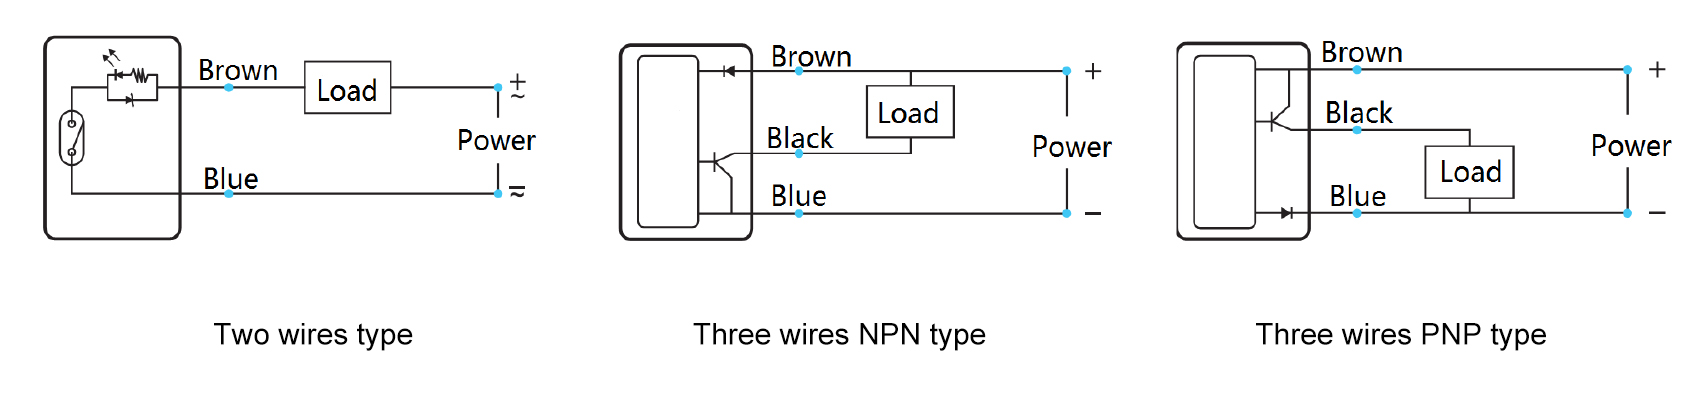 Connecting diagram 拷贝.jpg